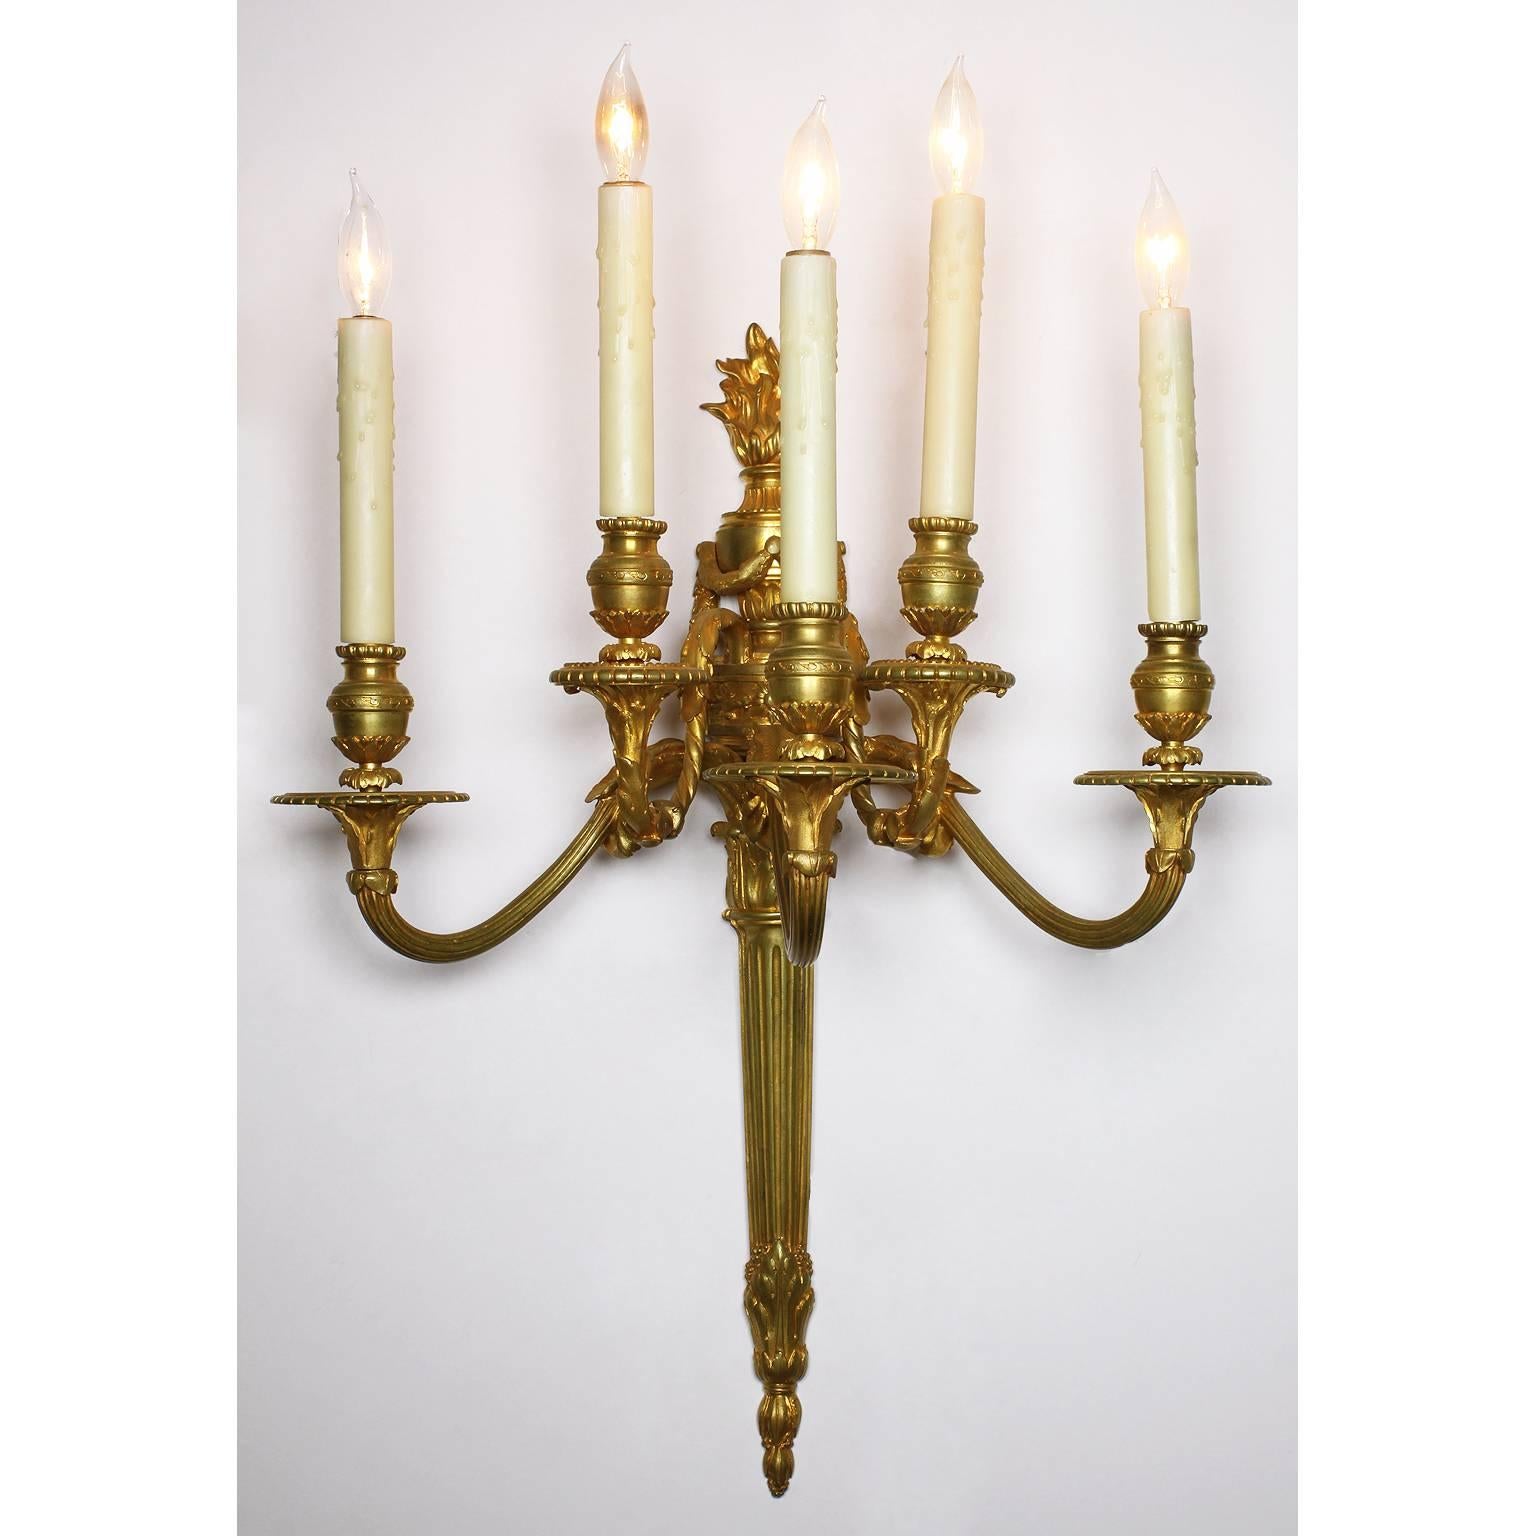 Paire d'appliques murales à cinq lumières en bronze doré de style Louis XVI du XIXe siècle. Chaque lumière a des bras en volutes et est couronnée d'une urne néoclassique surmontée de couronnes et surmontée d'une flamme brûlante. Estampillé des